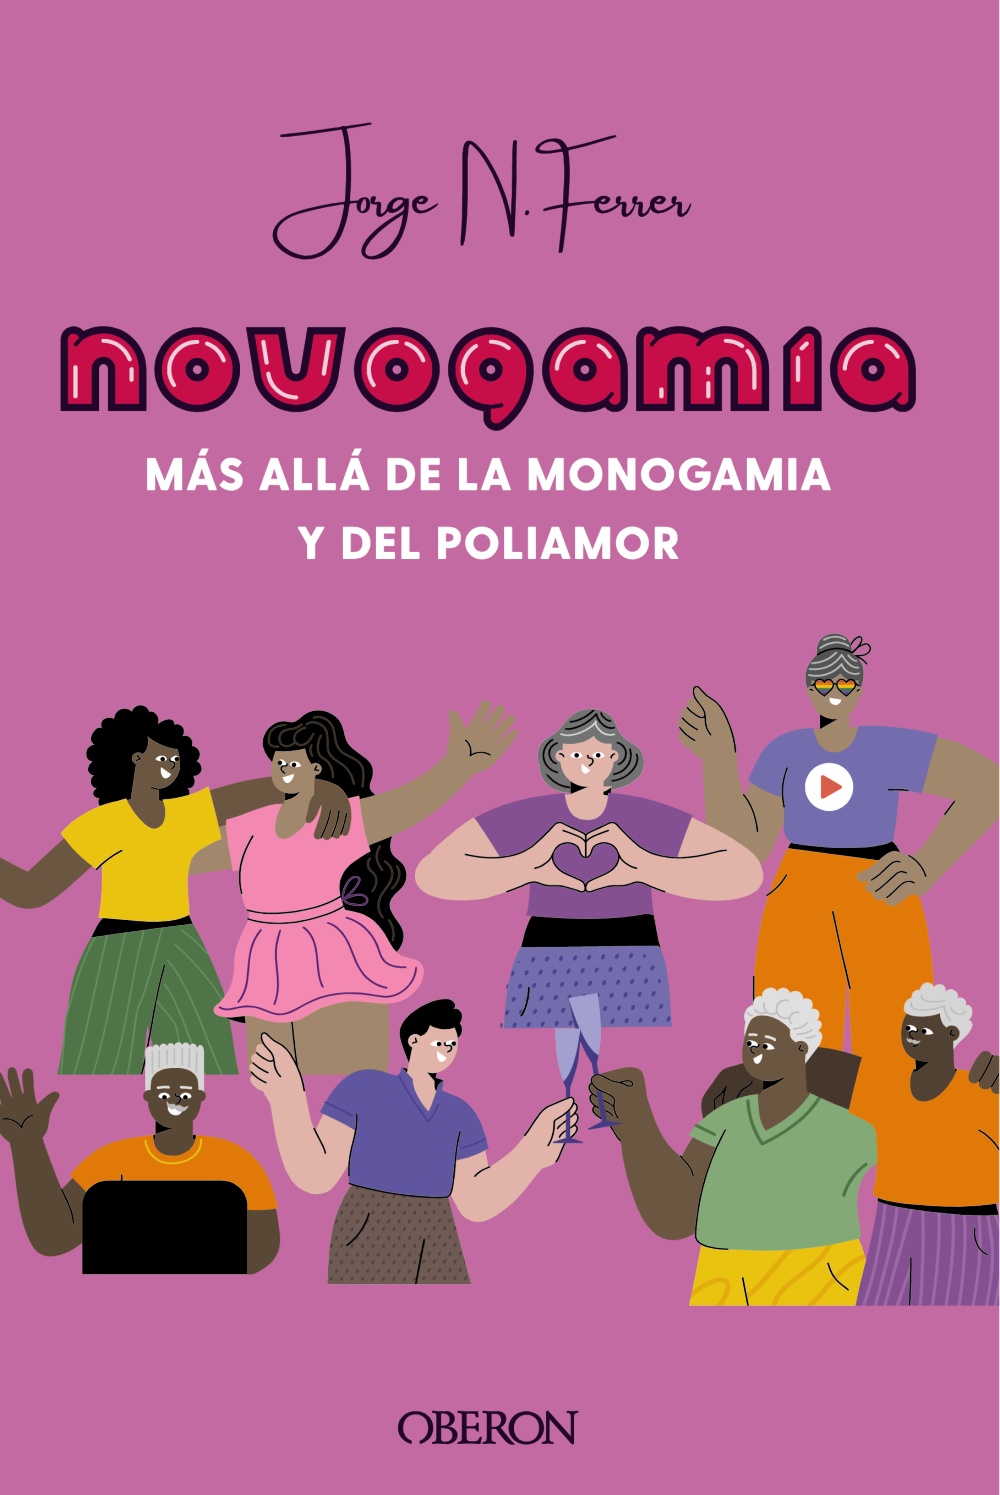 novogamia-mas-alla-de-la-monogamia-y-del-poliamor-978-84-415-4520-5.jpg